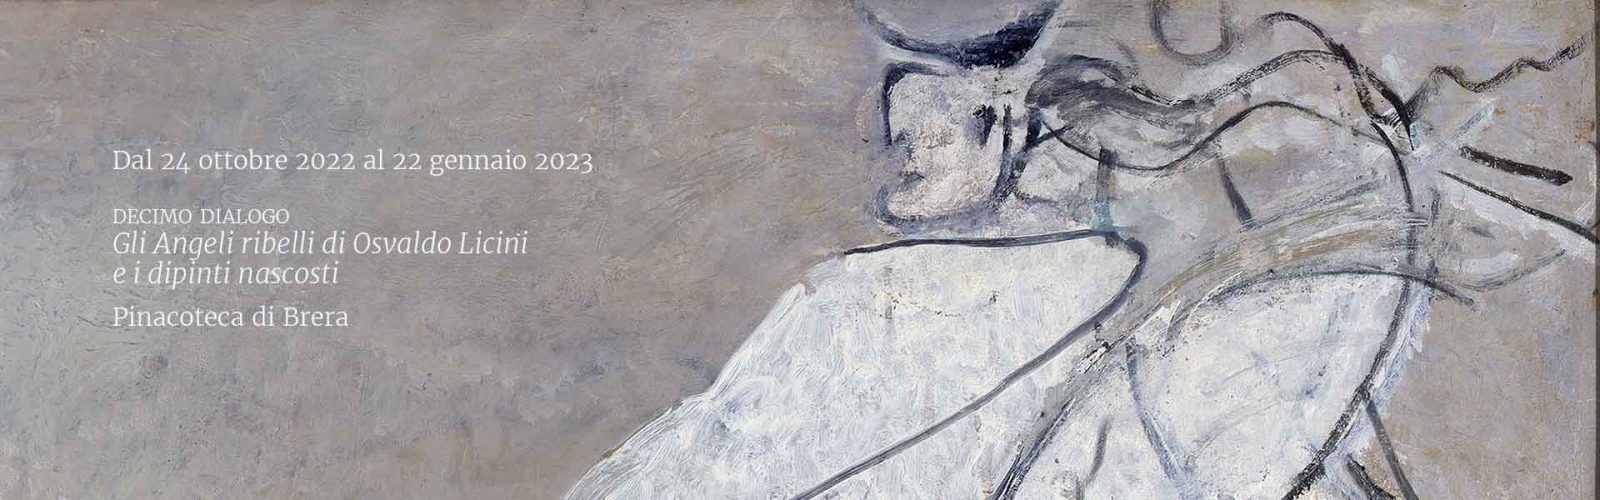 Decimo Dialogo “Gli Angeli ribelli di Osvaldo Licini e i dipinti nascosti”